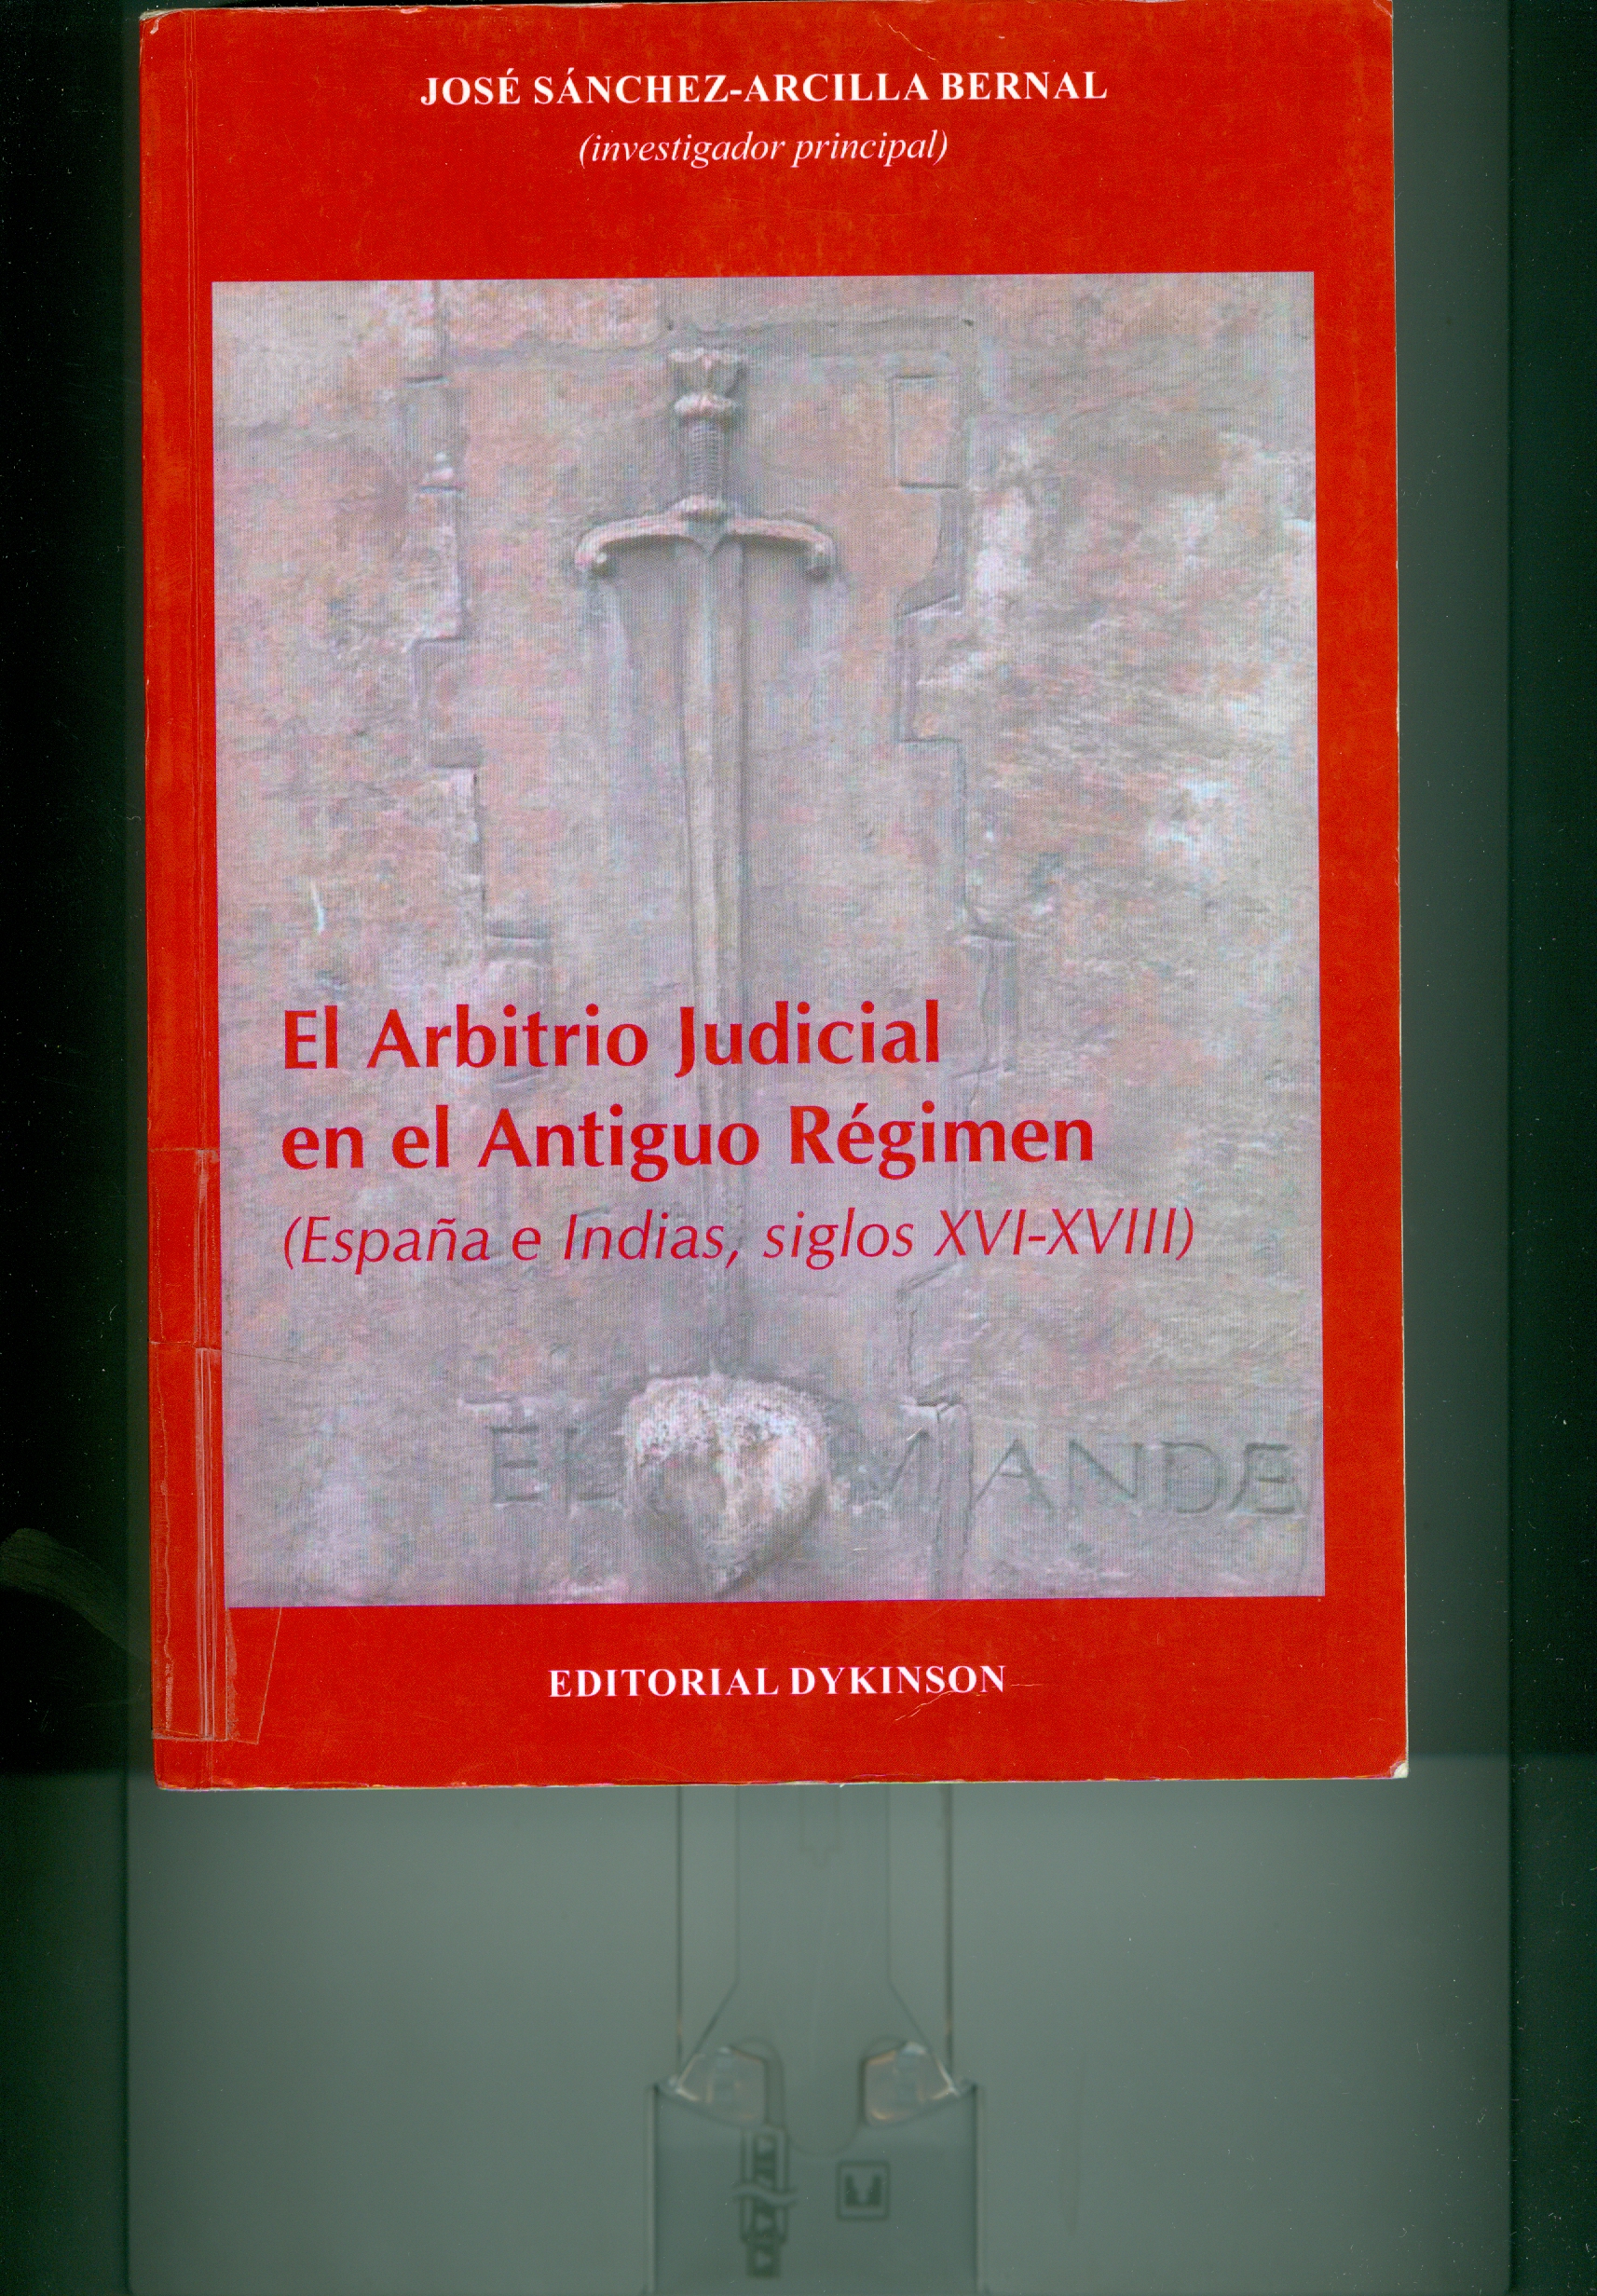 Imagen de portada del libro El arbitrio judicial en el Antiguo Régimen